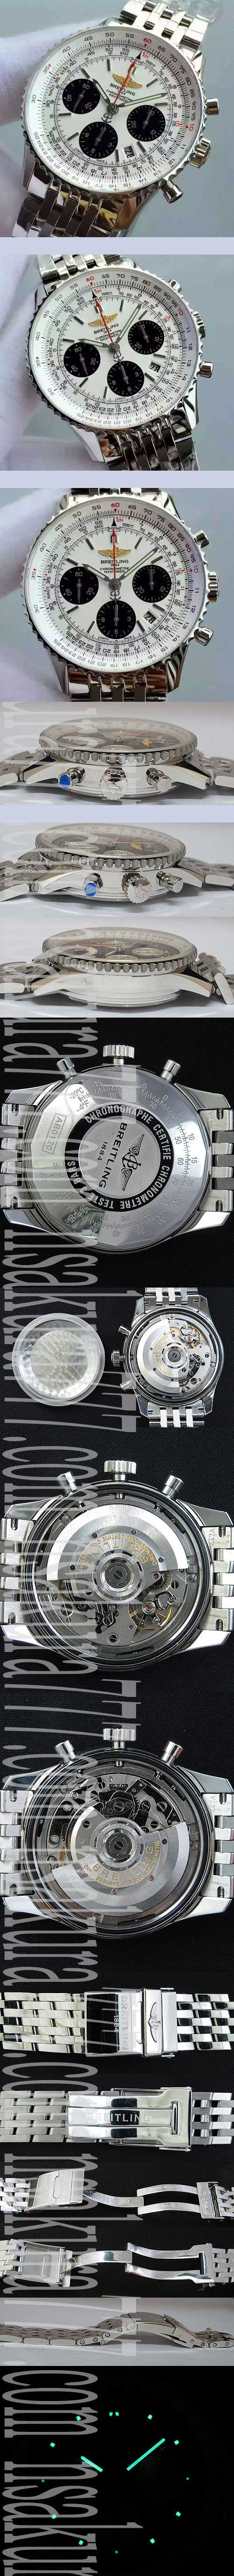 【日本人店舗】Breitling navitimer ナビタイマー 01 高級腕時計